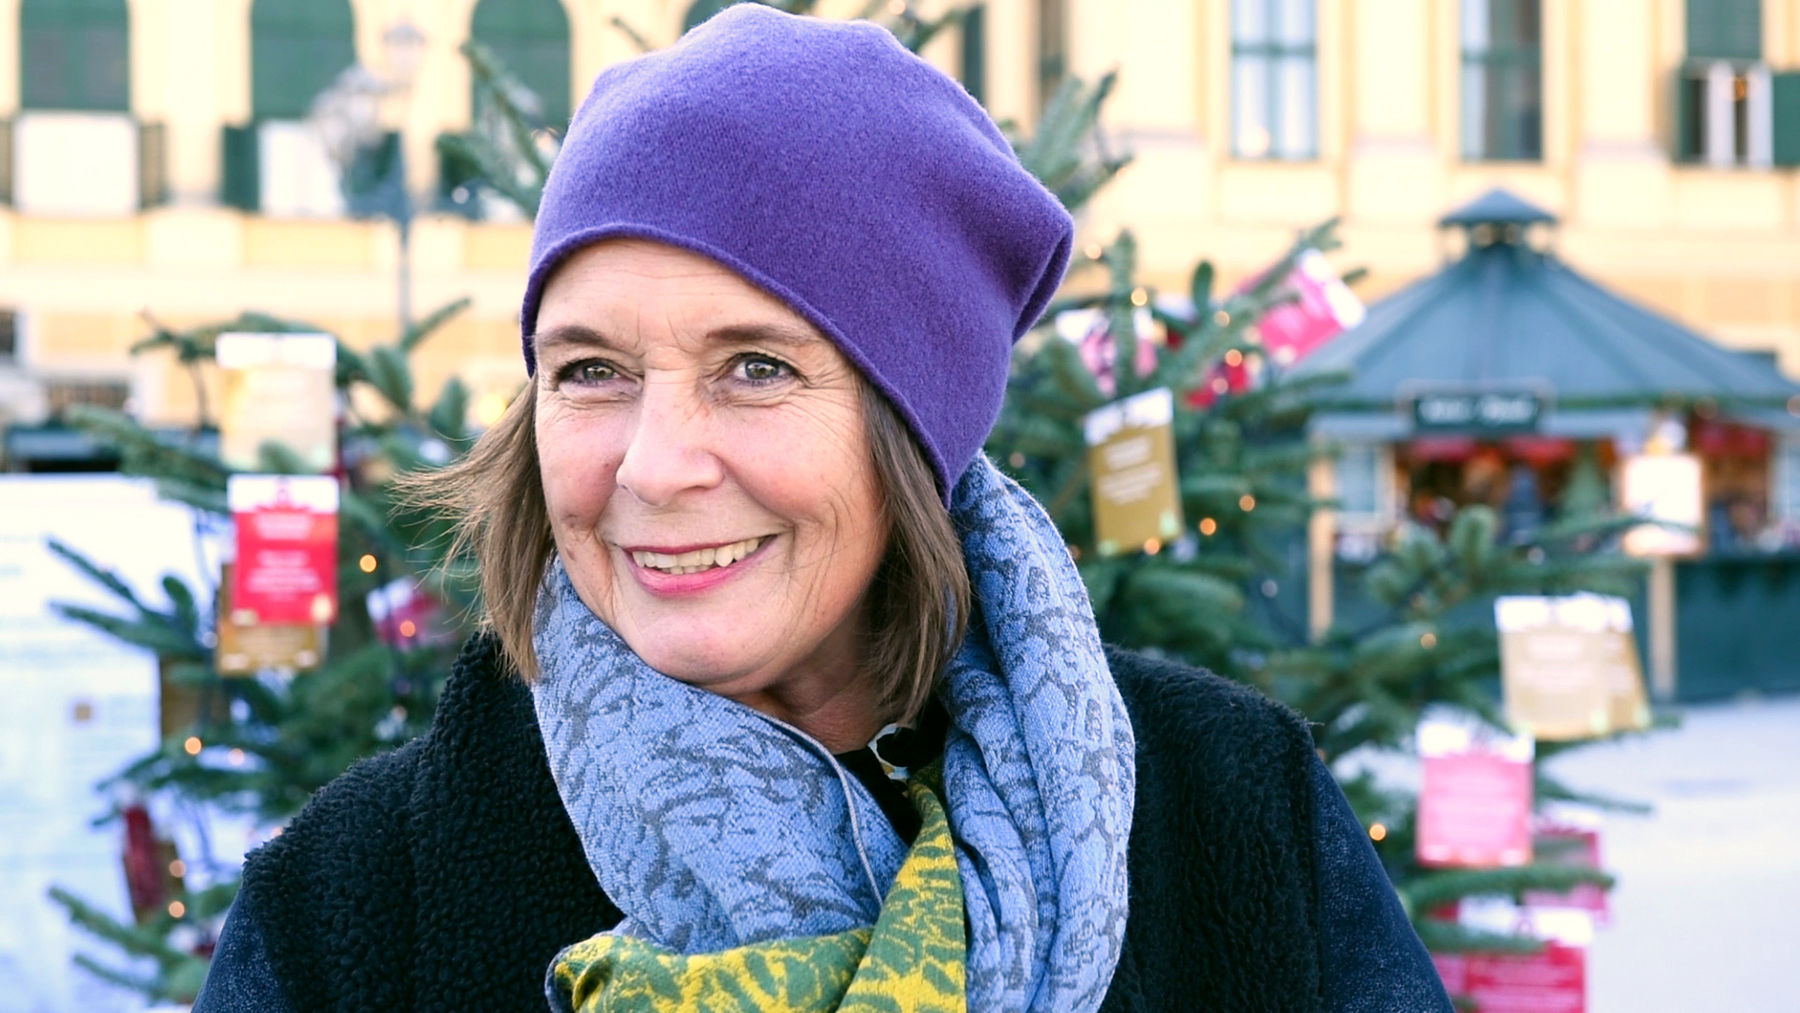 Elke Siedler, Leiterin der Abteilung Private Förderer und Partner, traf sich mit spendeninfo.at am Schönbrunner Weihnachtsmarkt zum Gespräch.